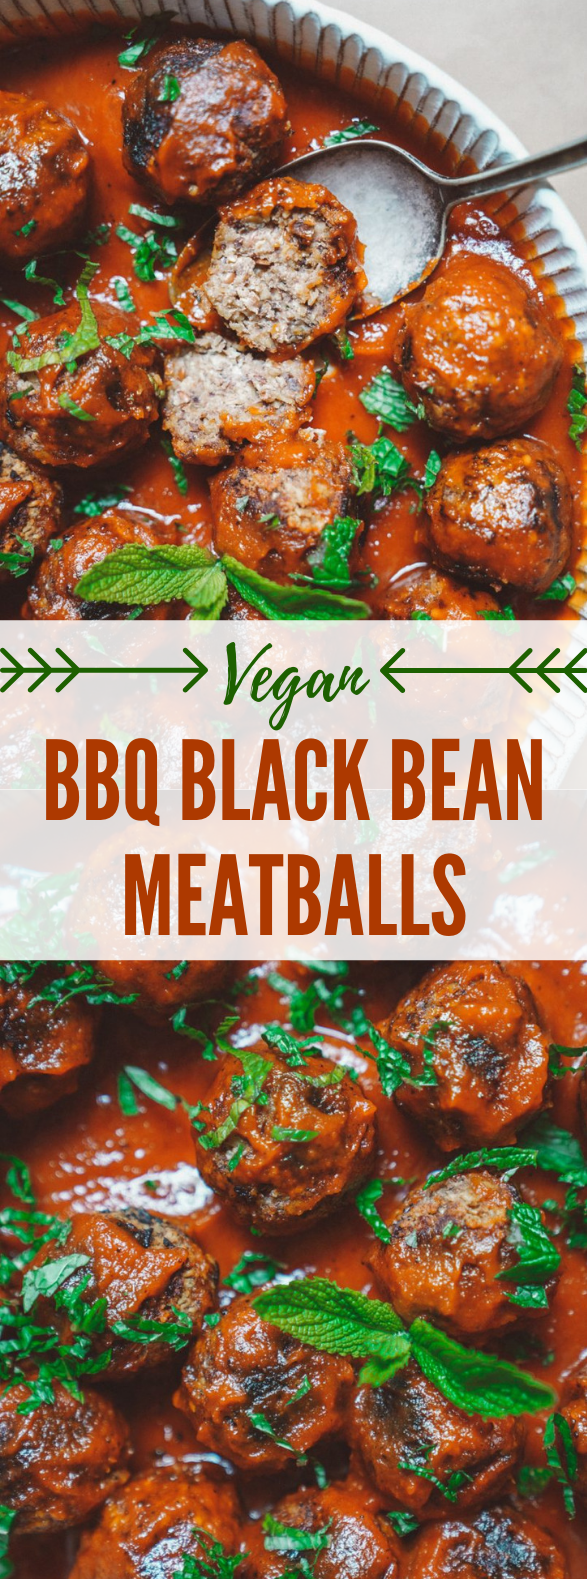 VEGAN BBQ BLACK BEAN MEATBALLS #healthyrecipes #vegan